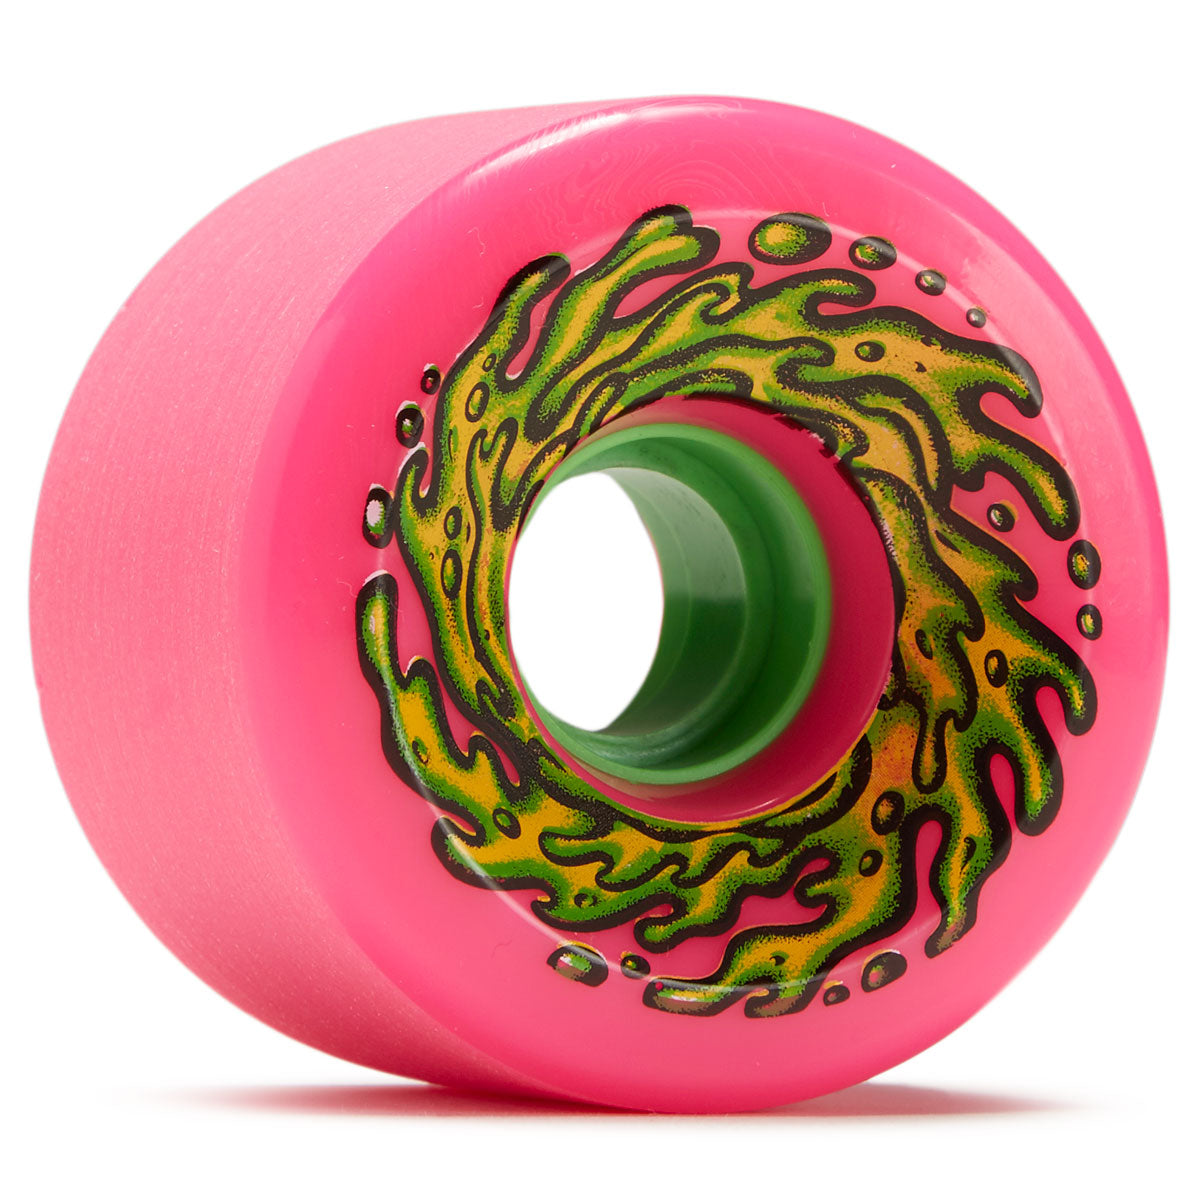 Slime Balls OG Slime Pink 78a Skateboard Wheels - Pink - 66mm image 1